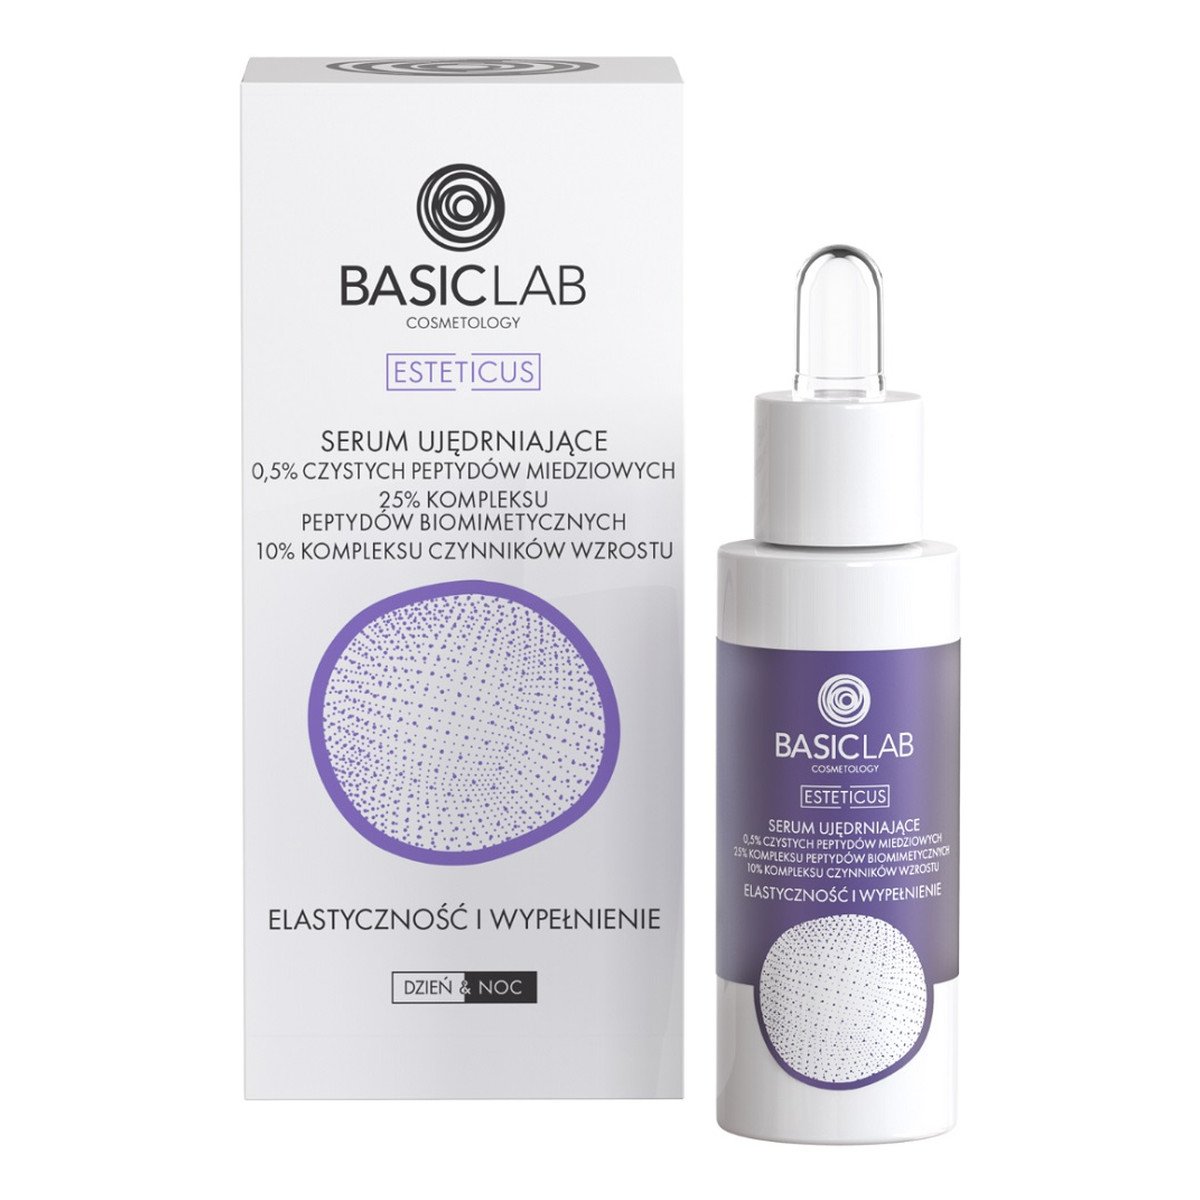 Basiclab Esteticus serum ujędrniające 0.5% czystych peptydów miedziowych elastyczność i wypełnienie 30ml